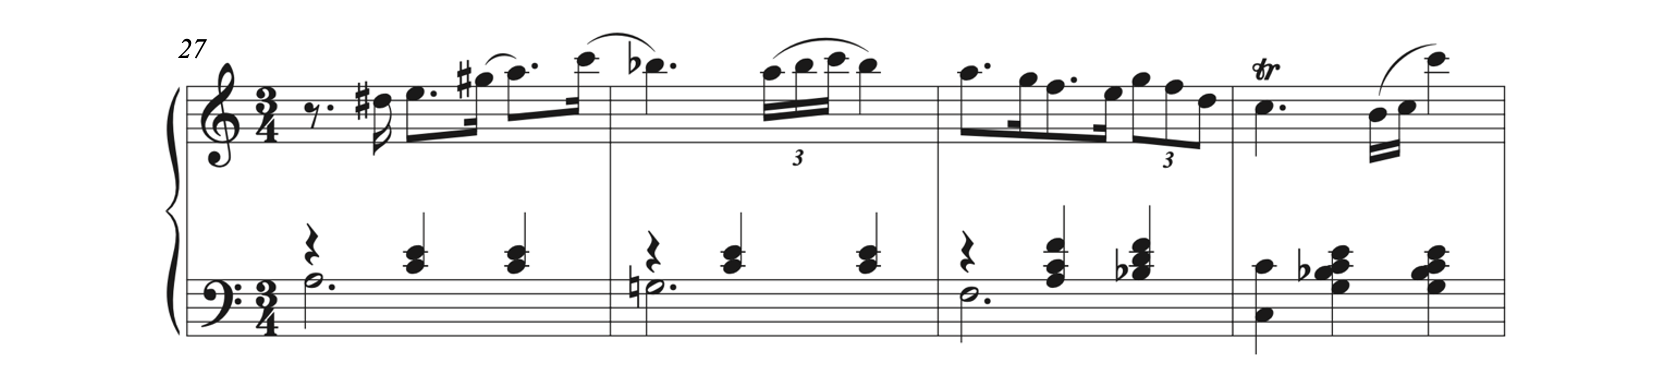 Score to Mayer, Valse, op. 32